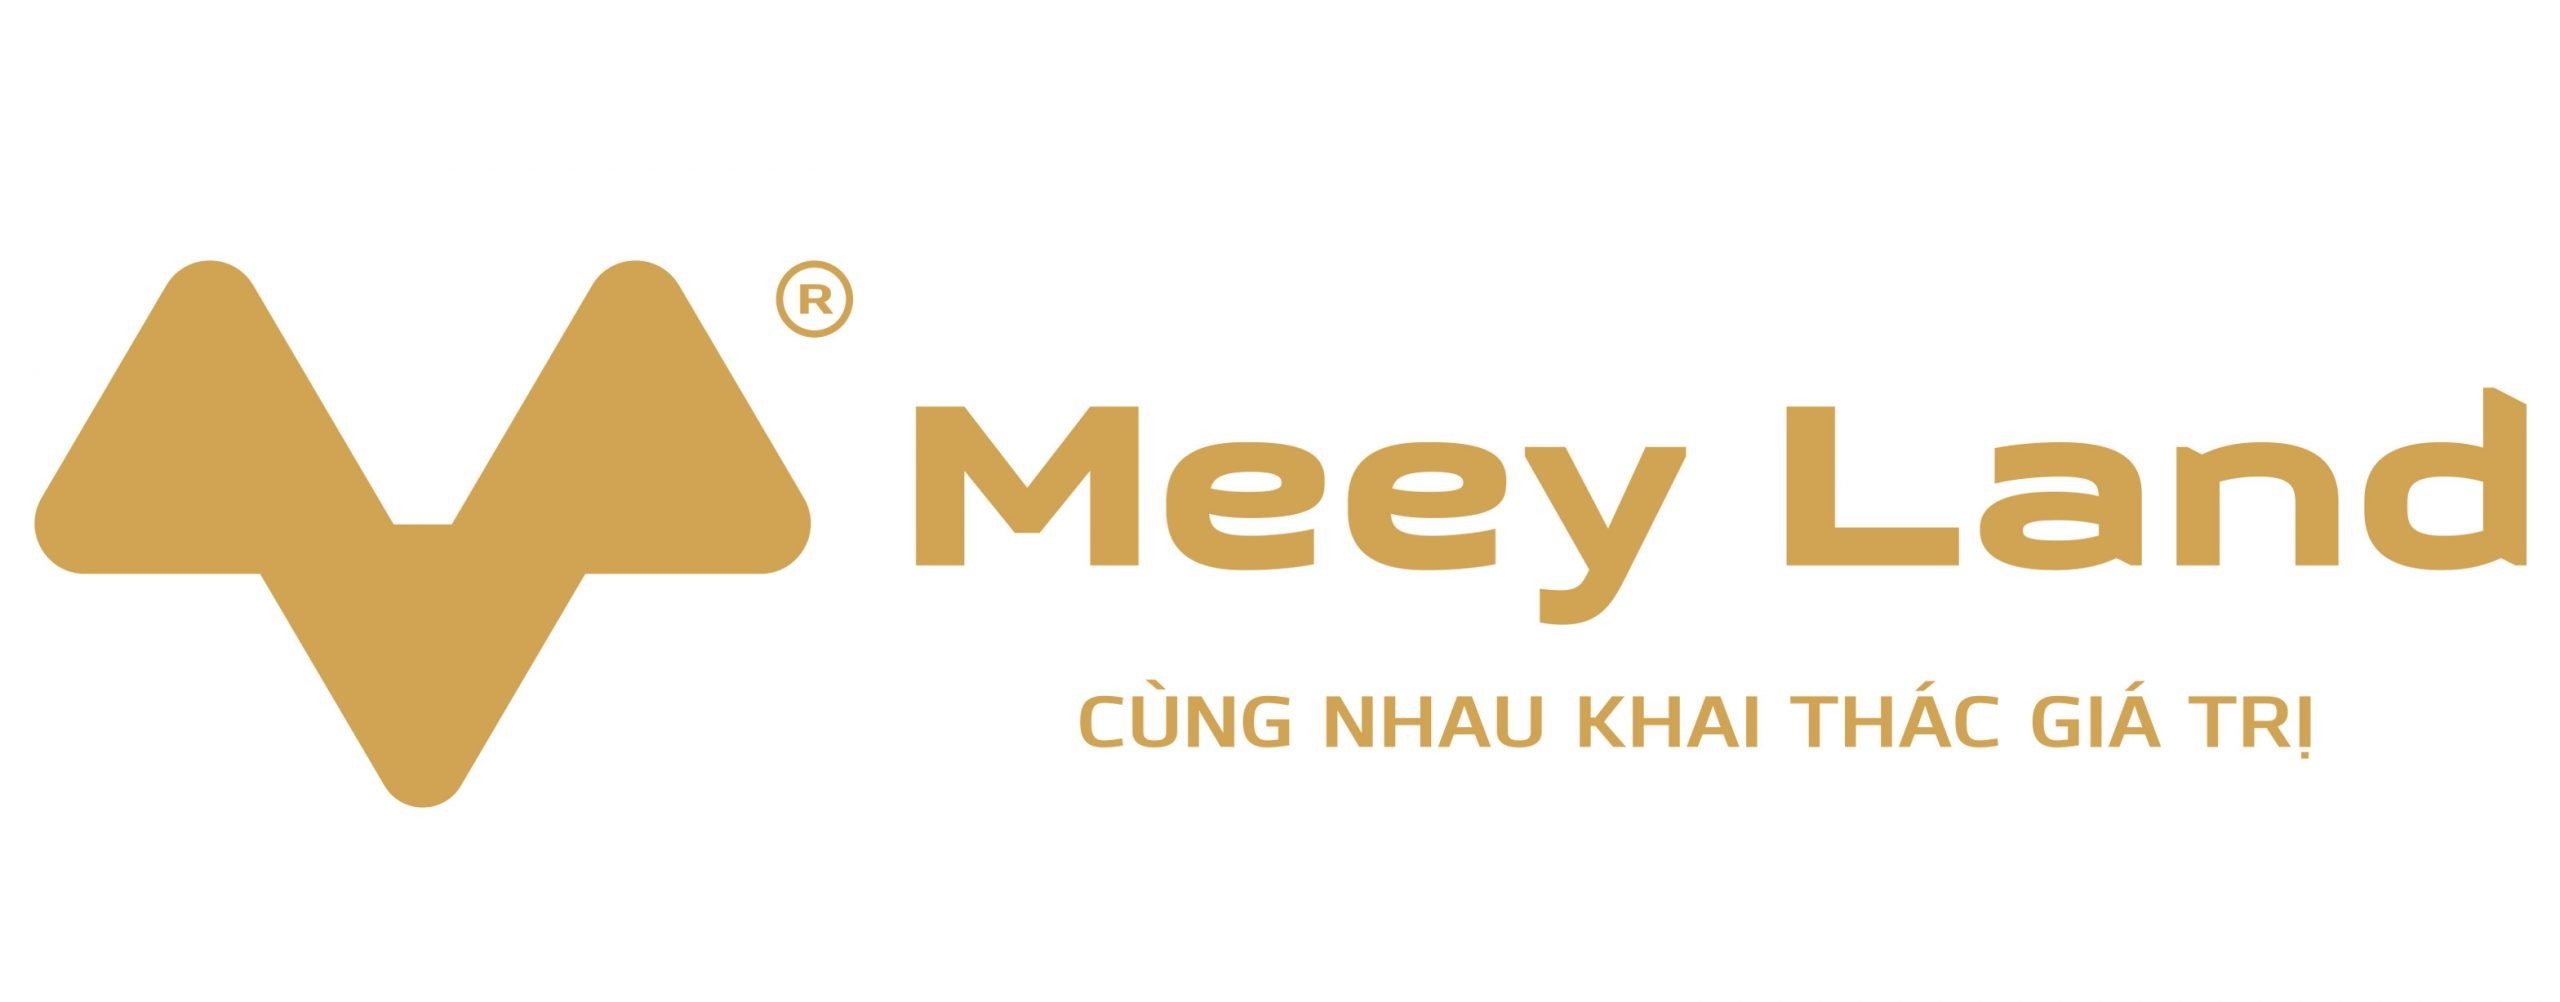 
Meeylang đang hướng đến thế giới bất động sản công nghệ
